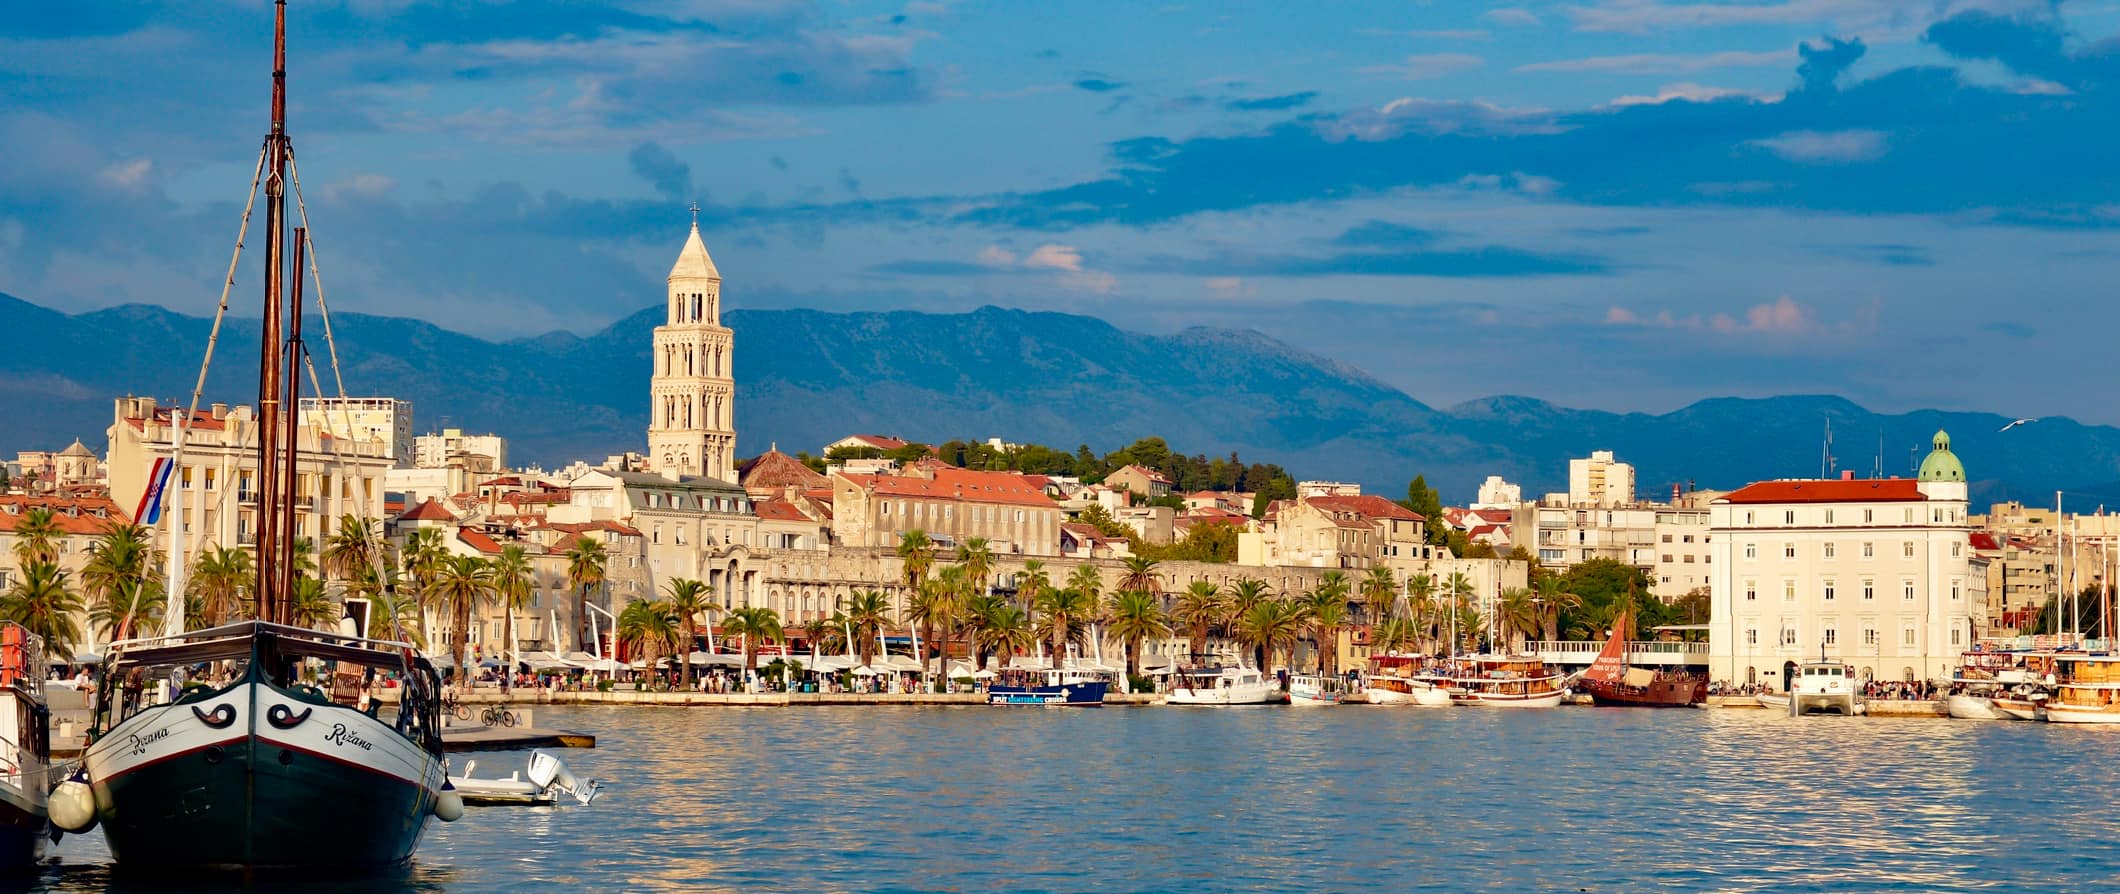 A small sailboat floating on the sea near Split, Croatia